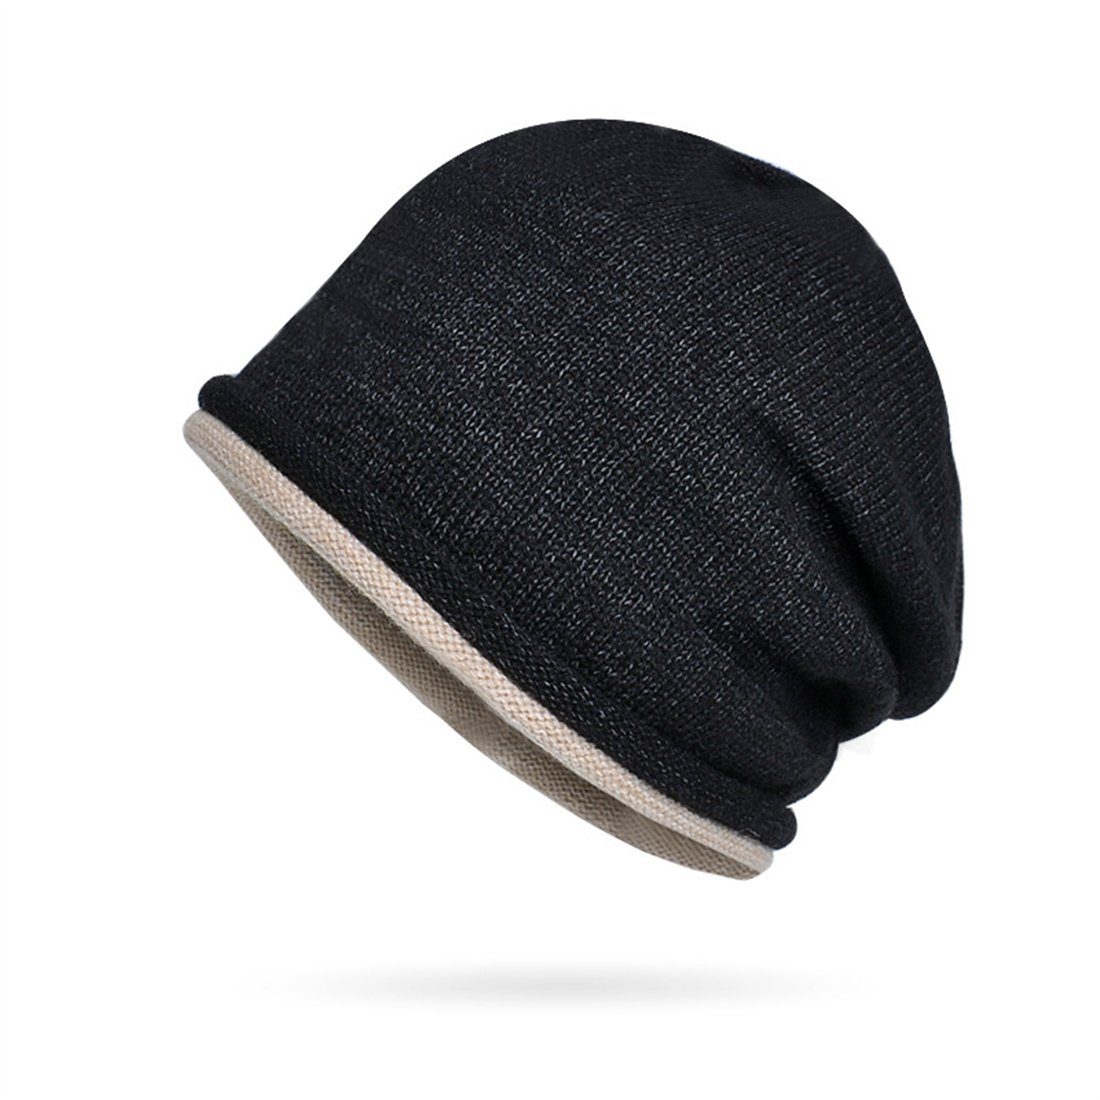 warme DÖRÖY Kopfmütze,gestapelte Mütze Schwarz Winter Strickmütze,Ohrenschutz Strickmütze Unisex